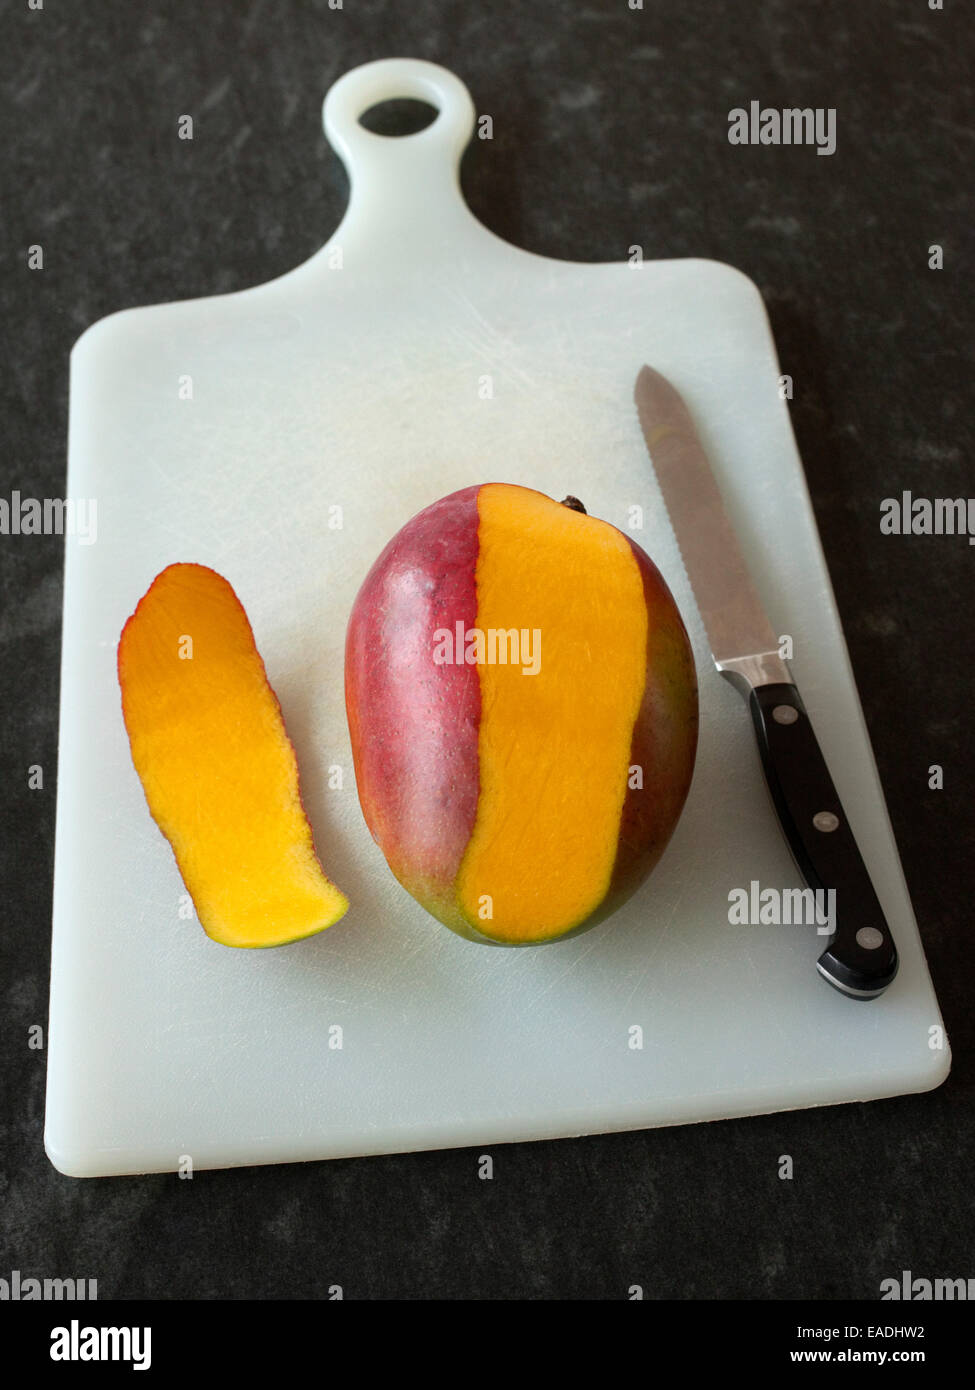 Mangue pelée partiellement et knife on cutting board Banque D'Images